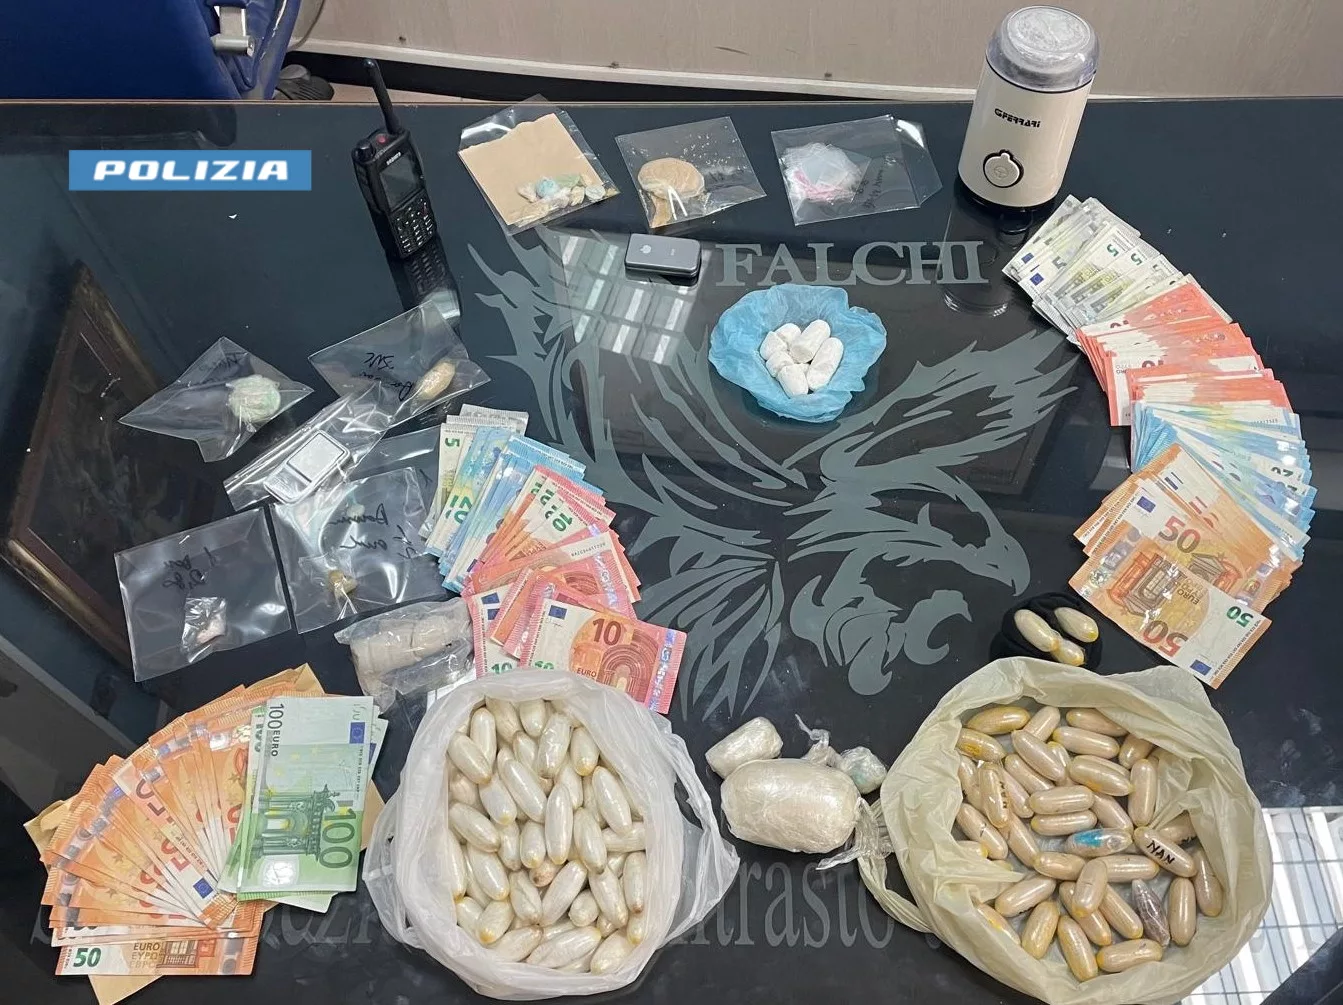 Polizia di Stato: stretta sul traffico di sostanze stupefacenti. arrestati due uomini e sequestrati due laboratori